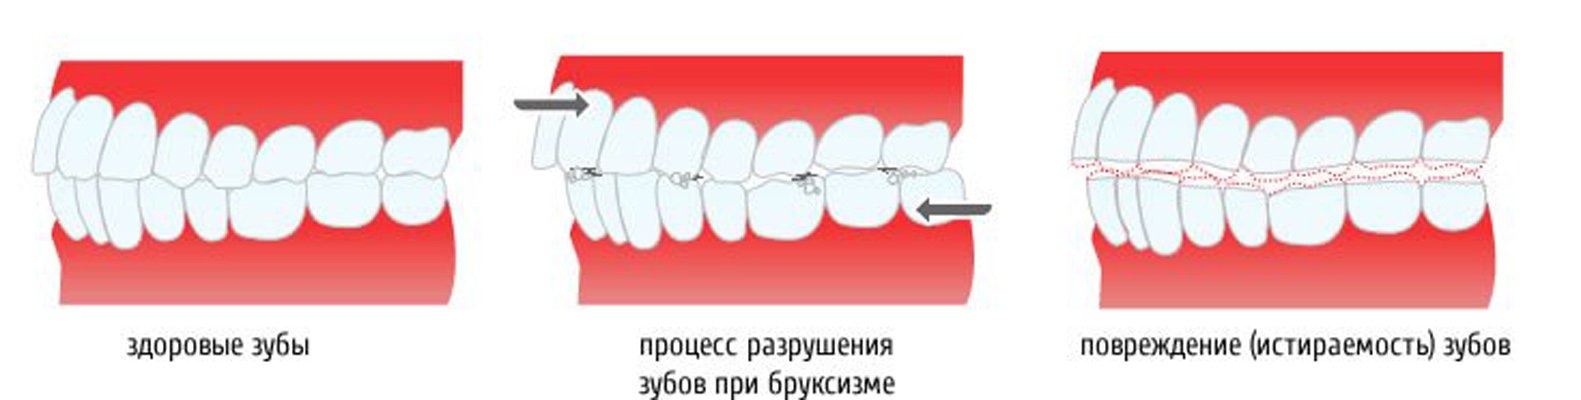 Процесс разрушения зубов при бруксизме